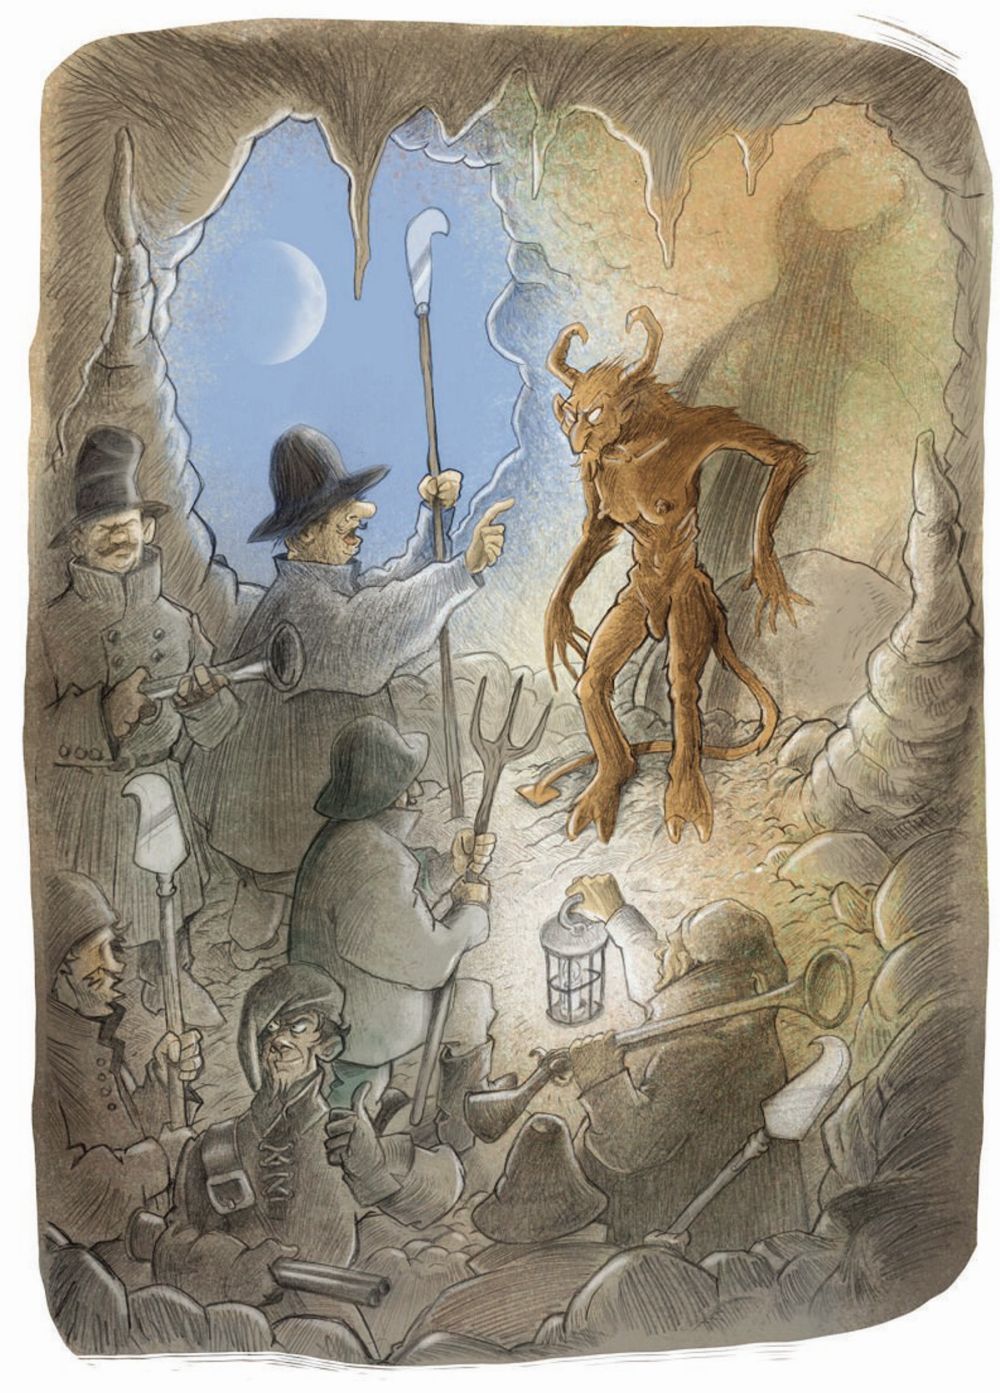 Nicolas Sjöstedt a illustré ce livre de contes, rédigés par Aurélie Reusser.